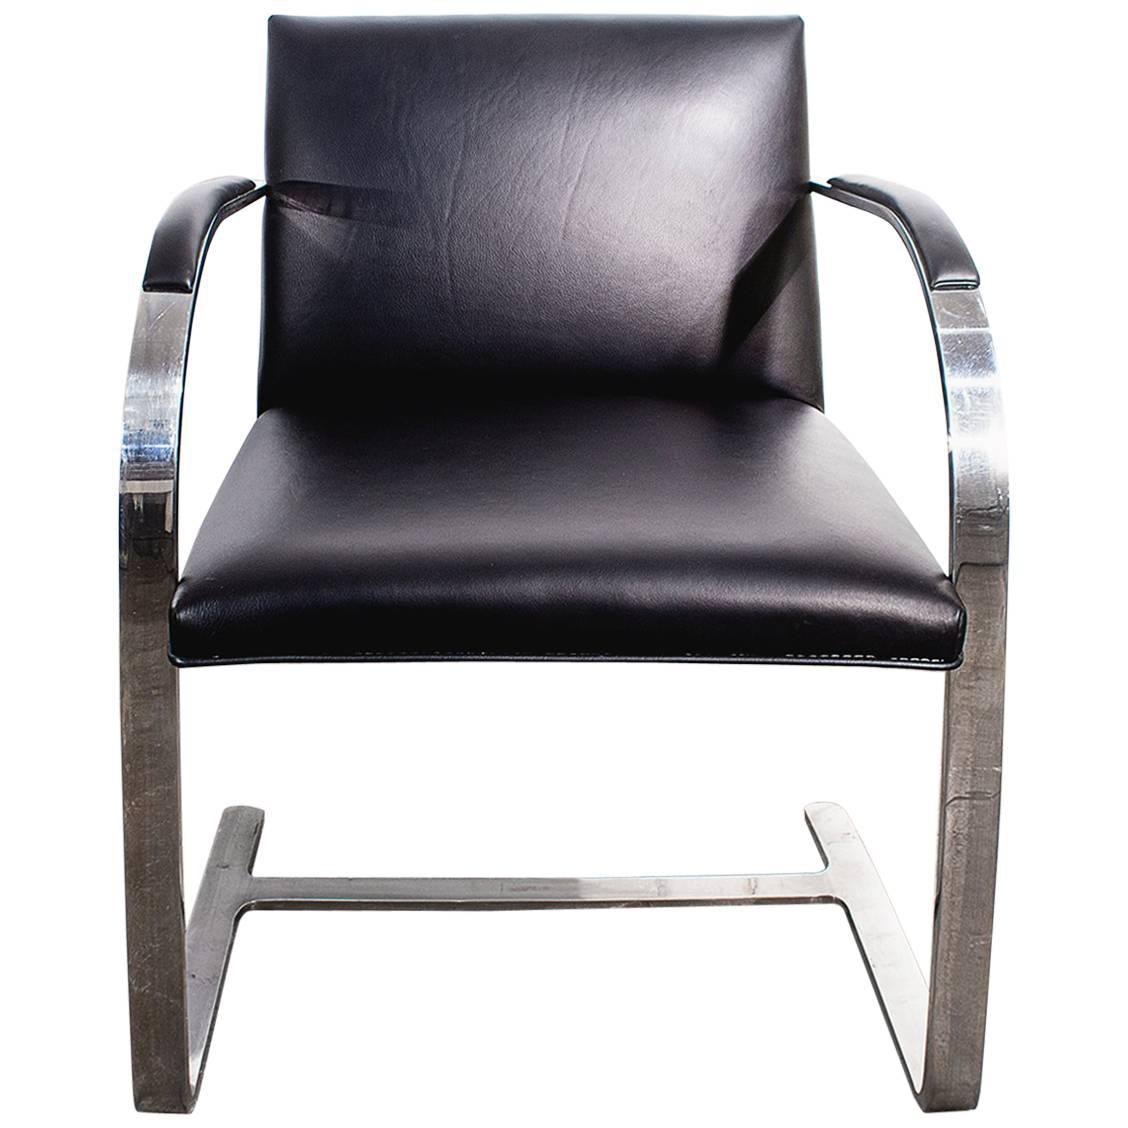 Brno Flat Bar Arm Chair by Mies van der Rohe